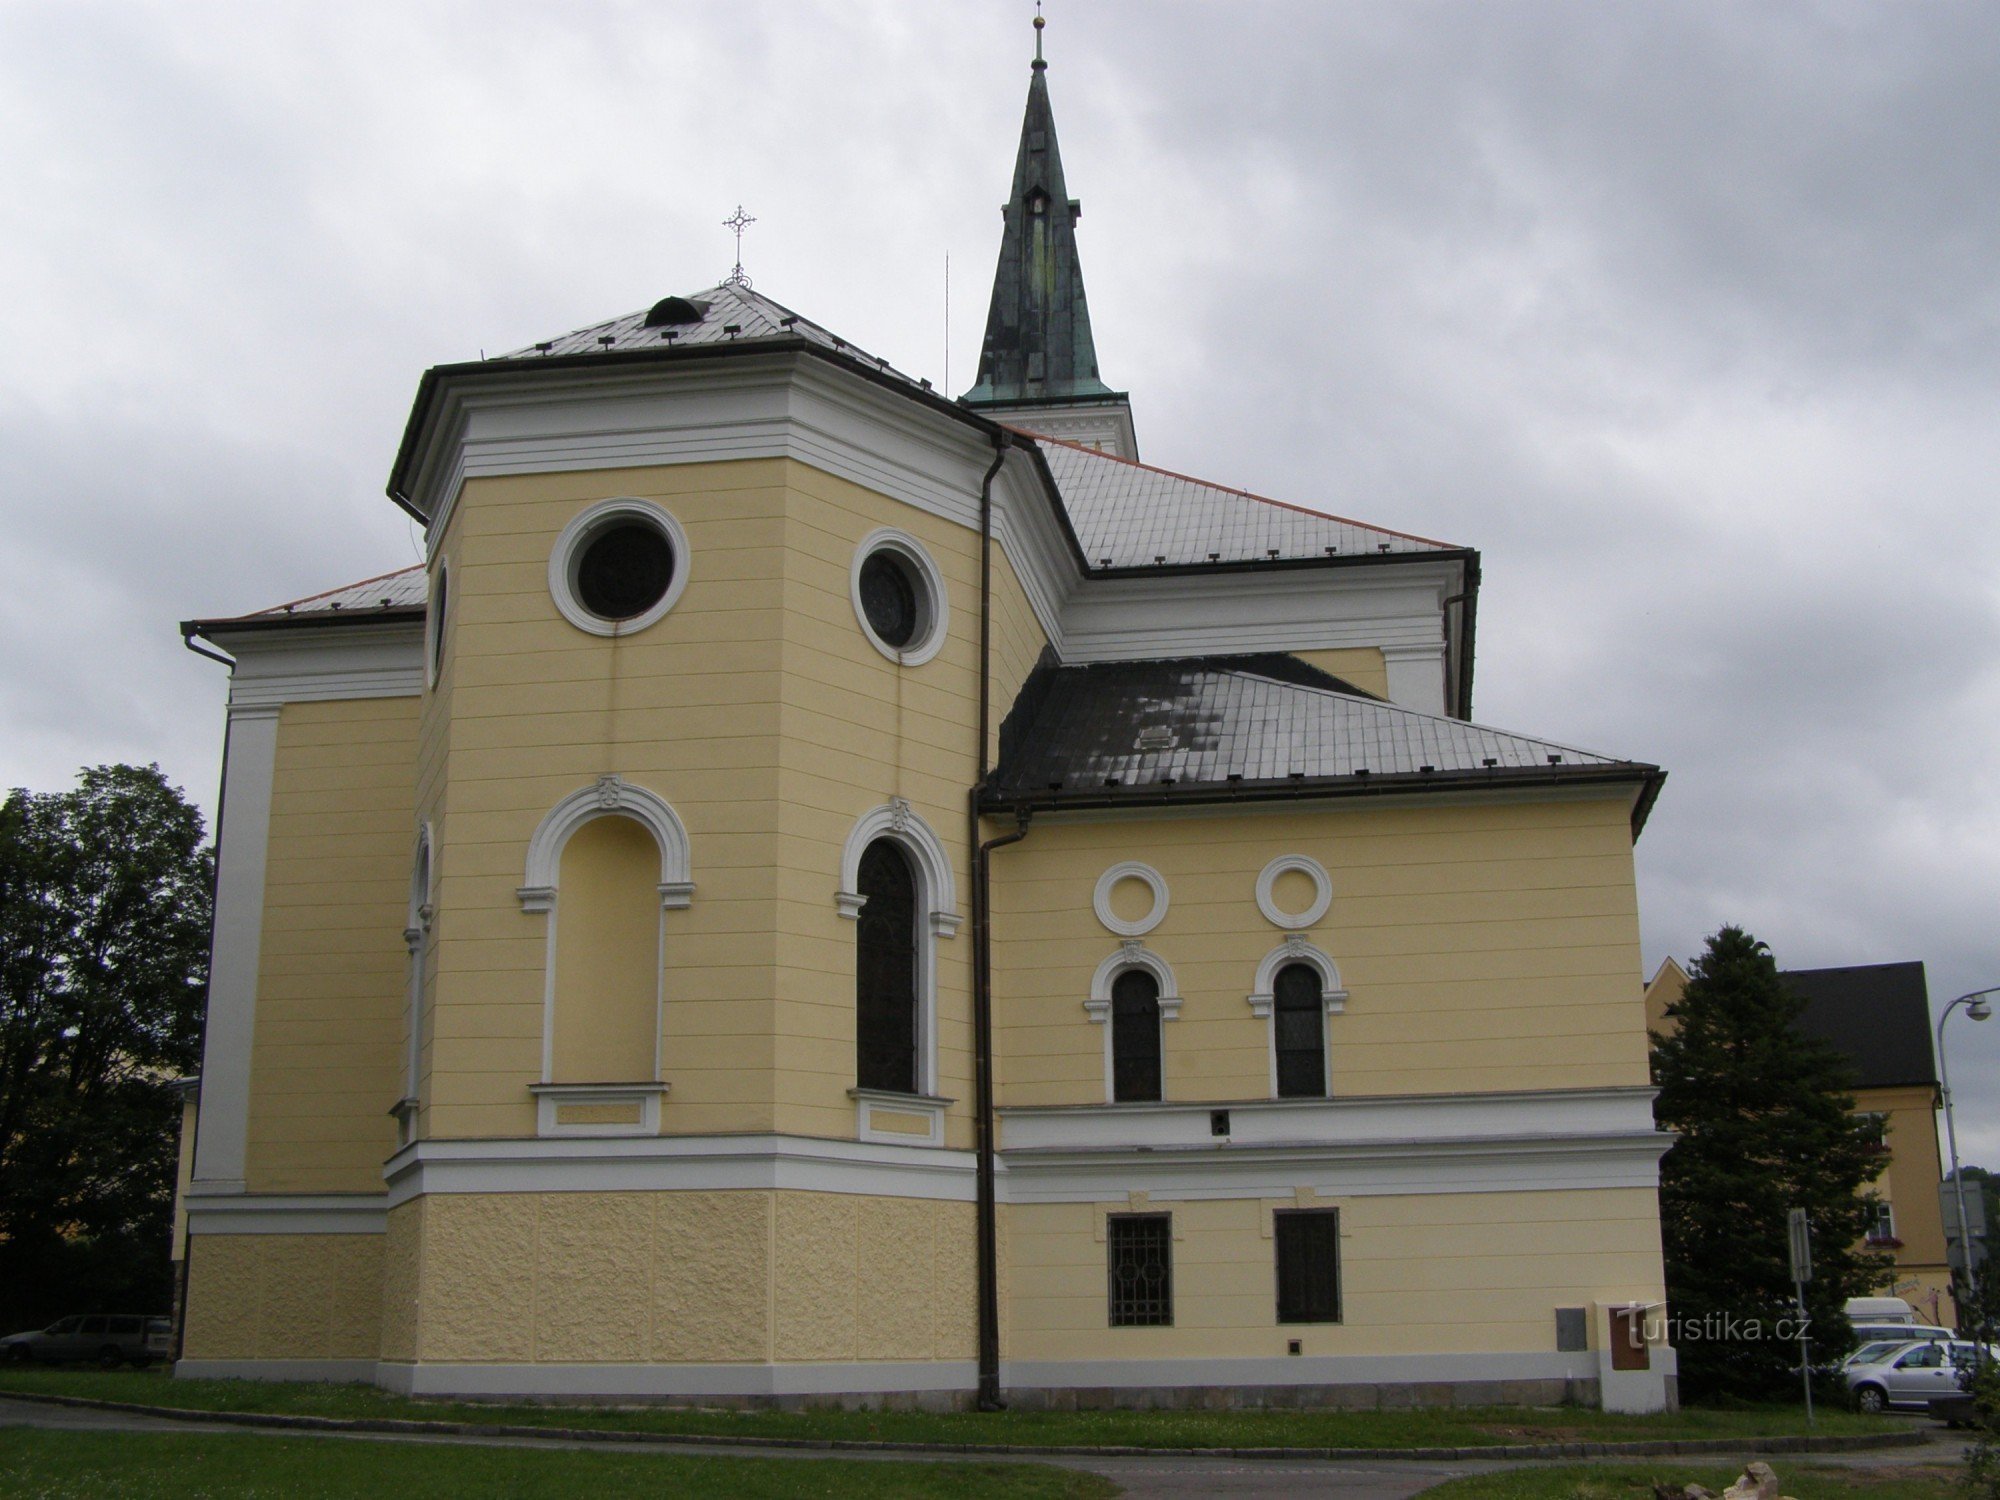 Jeseník - Church of the Assumption of the Virgin Mary